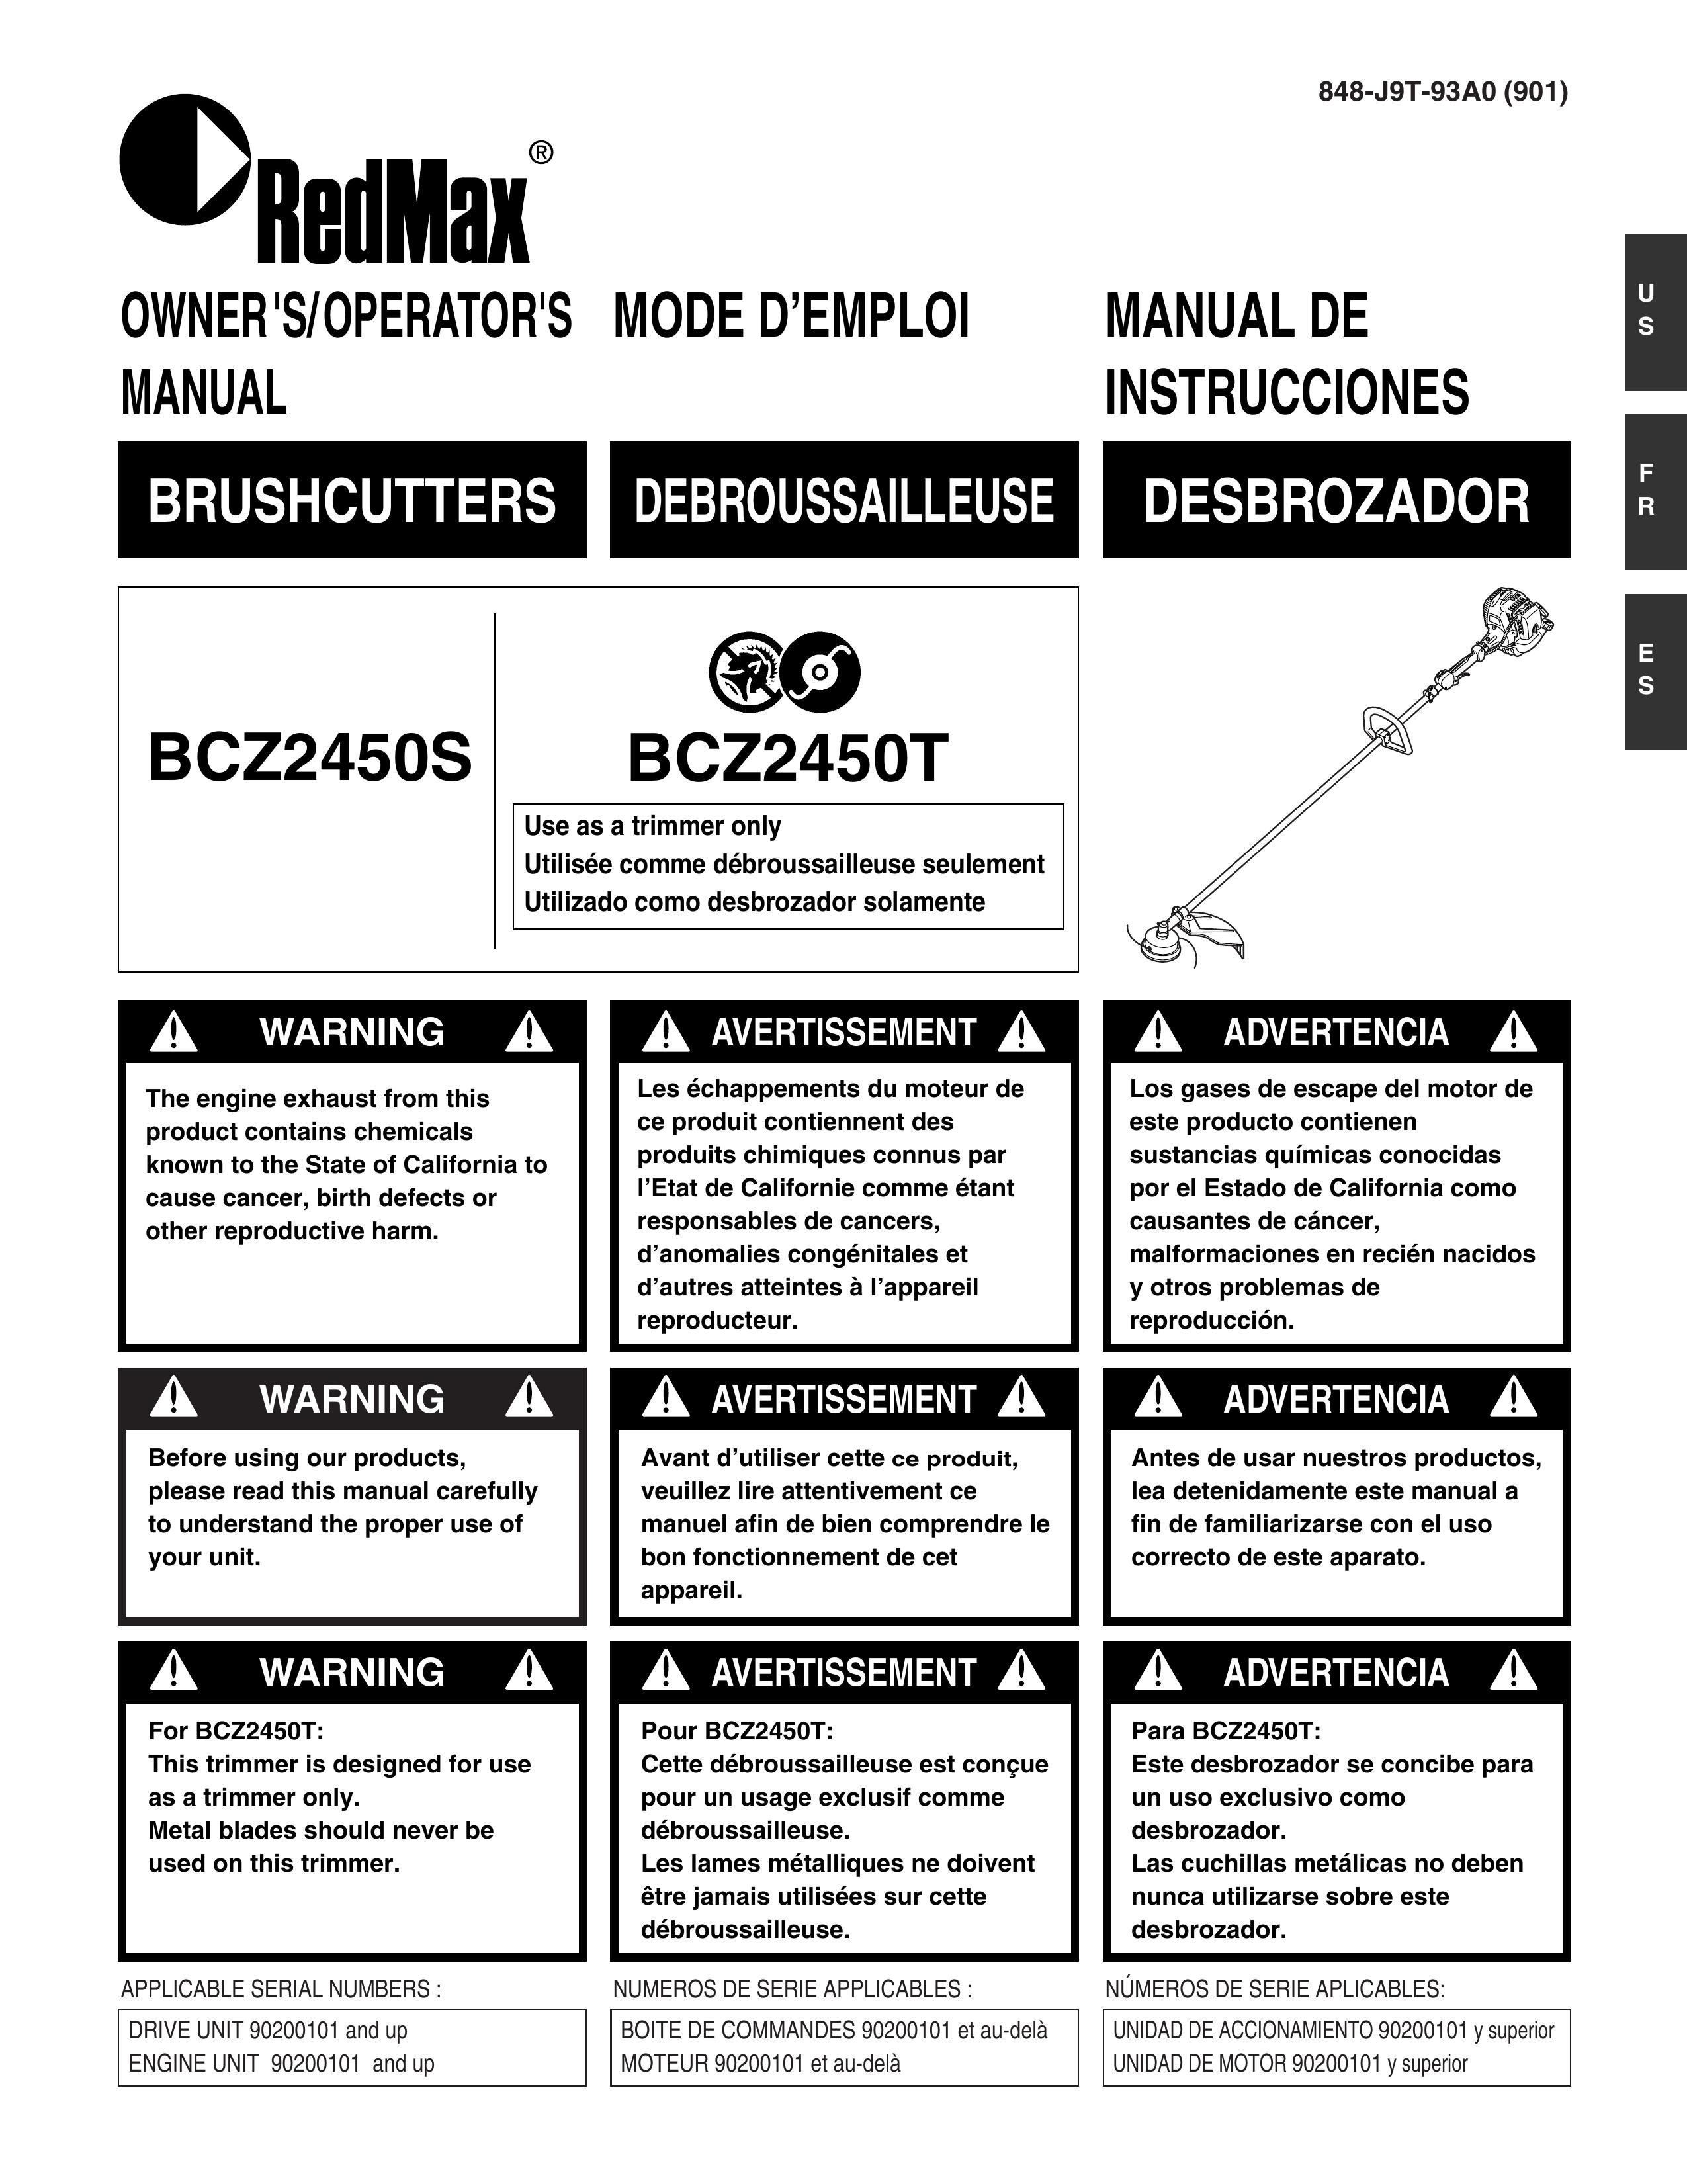 RedMax BCZ2450T Brush Cutter User Manual